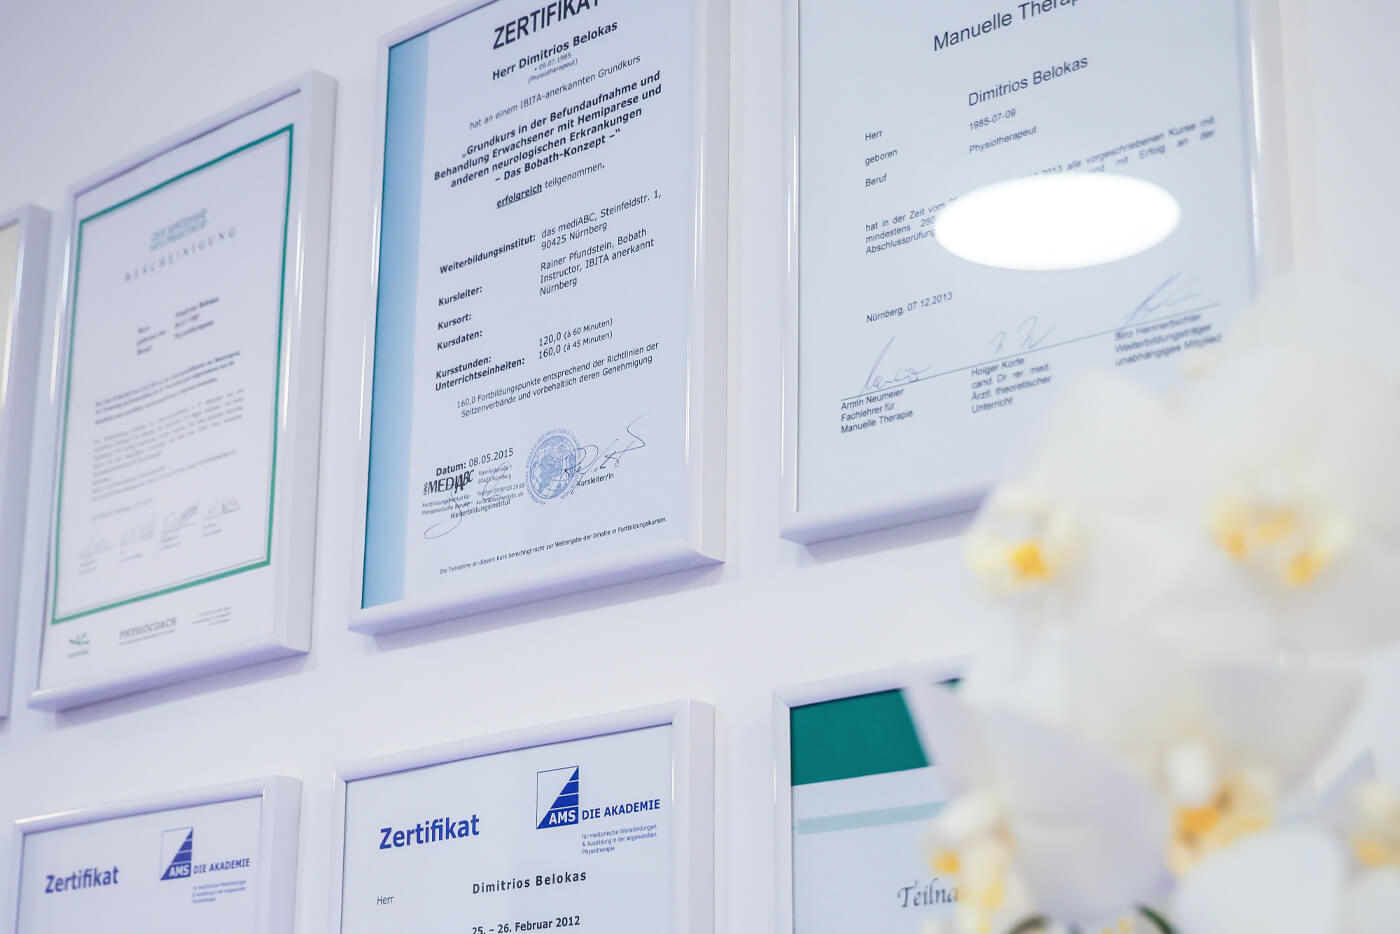 Foto von acht Zertifikaten, die bei Belokas an der Wand hängen.